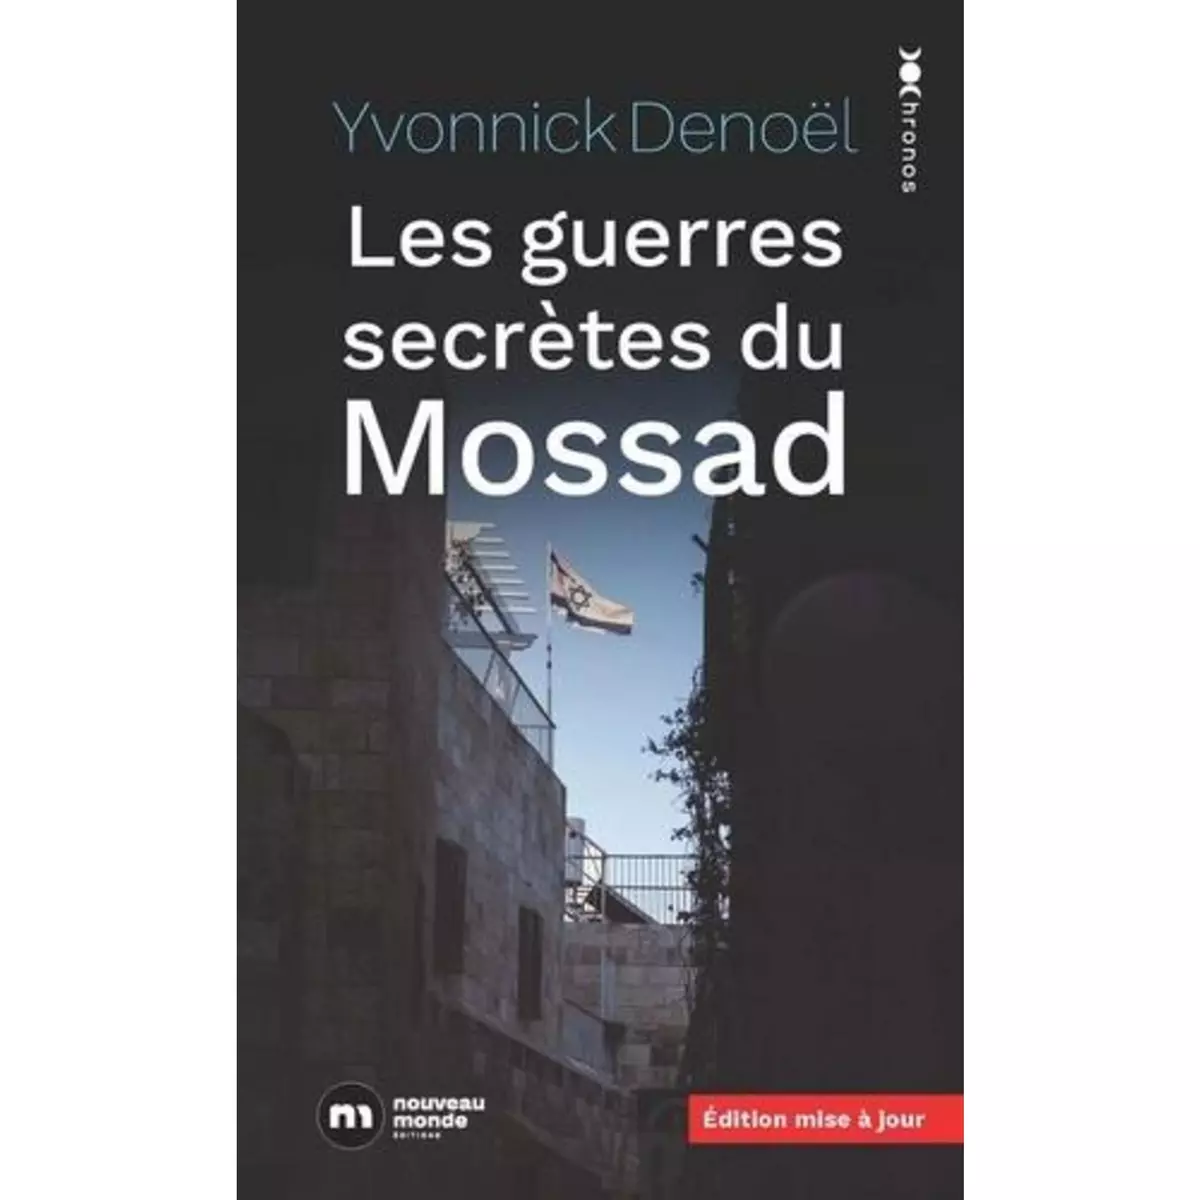  LES GUERRES SECRETES DU MOSSAD, Denoël Yvonnick